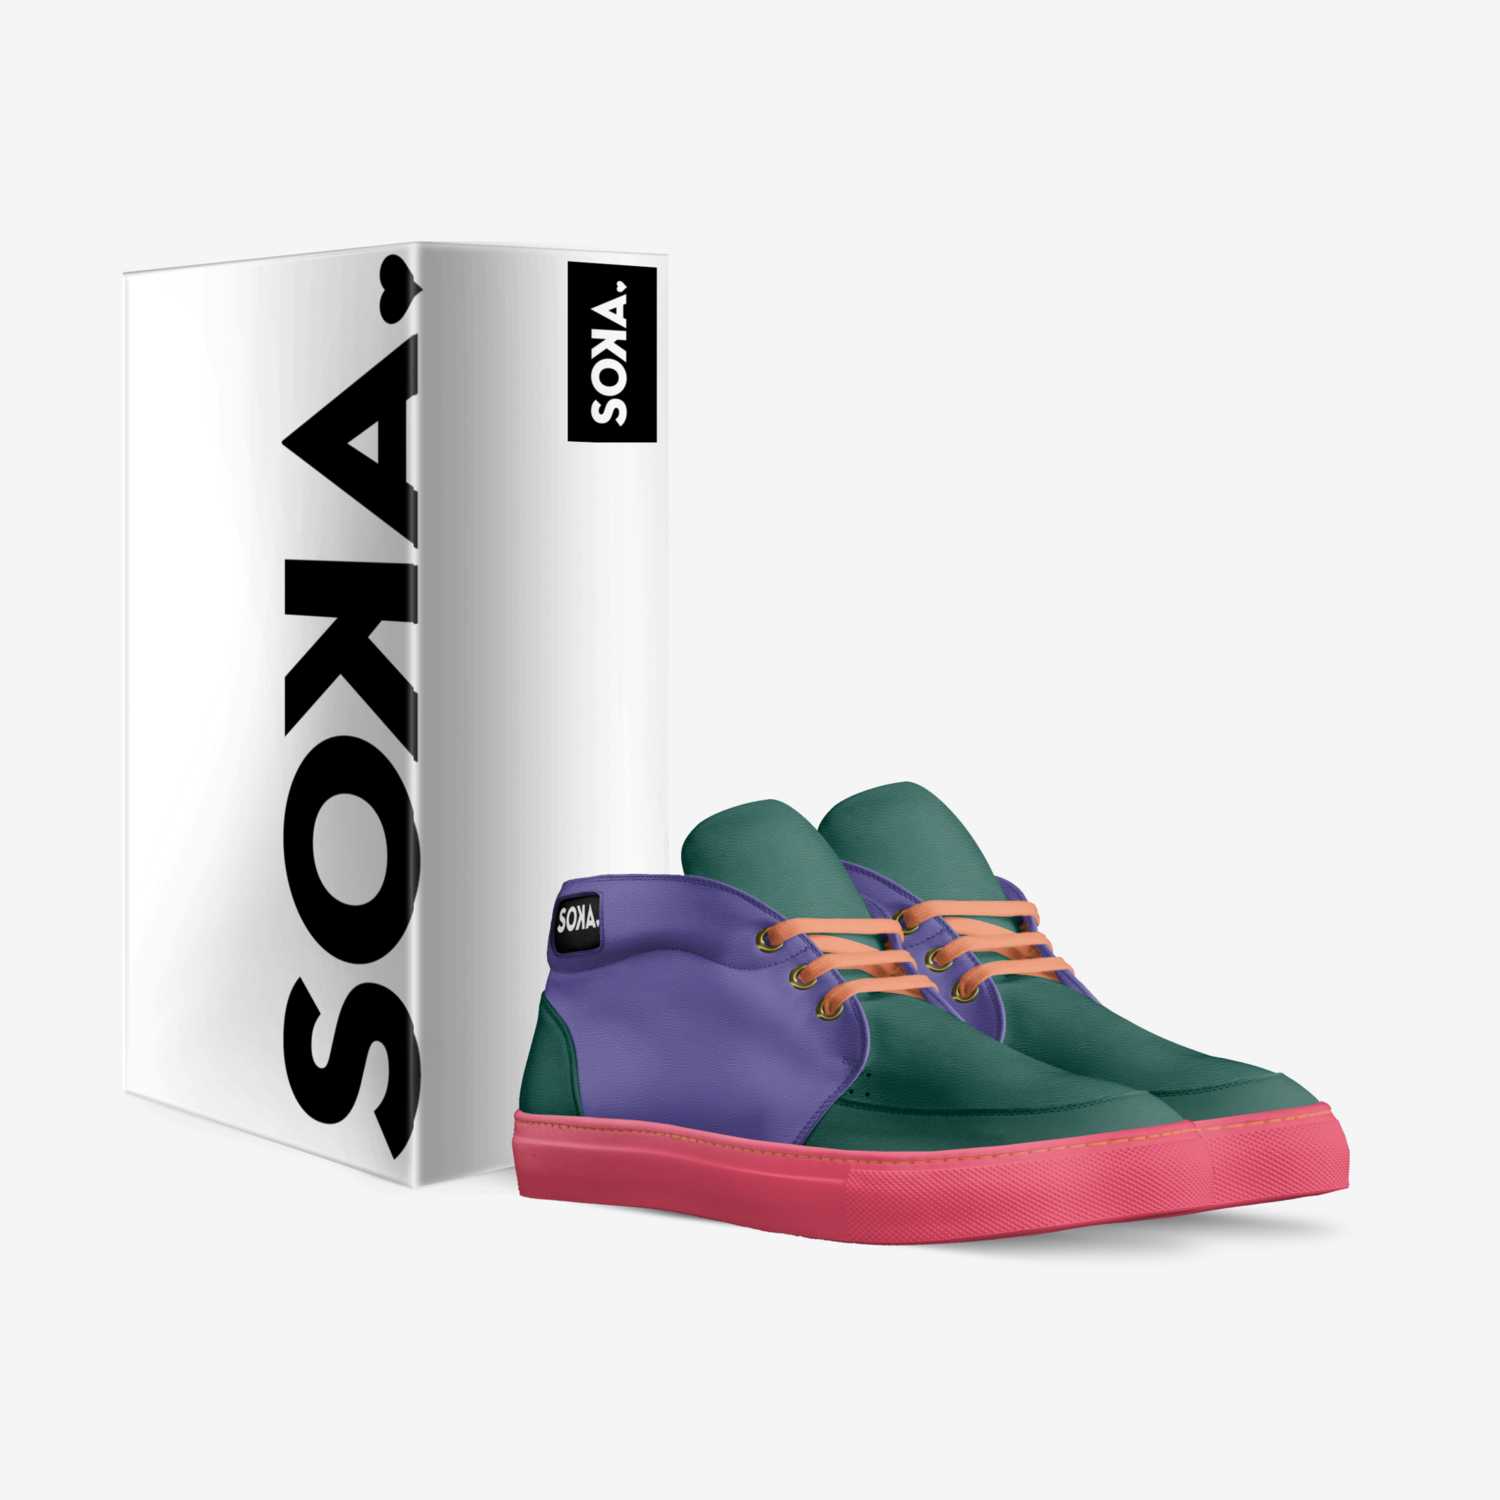 SOKA custom made in Italy shoes by Agus Sudono | Box view